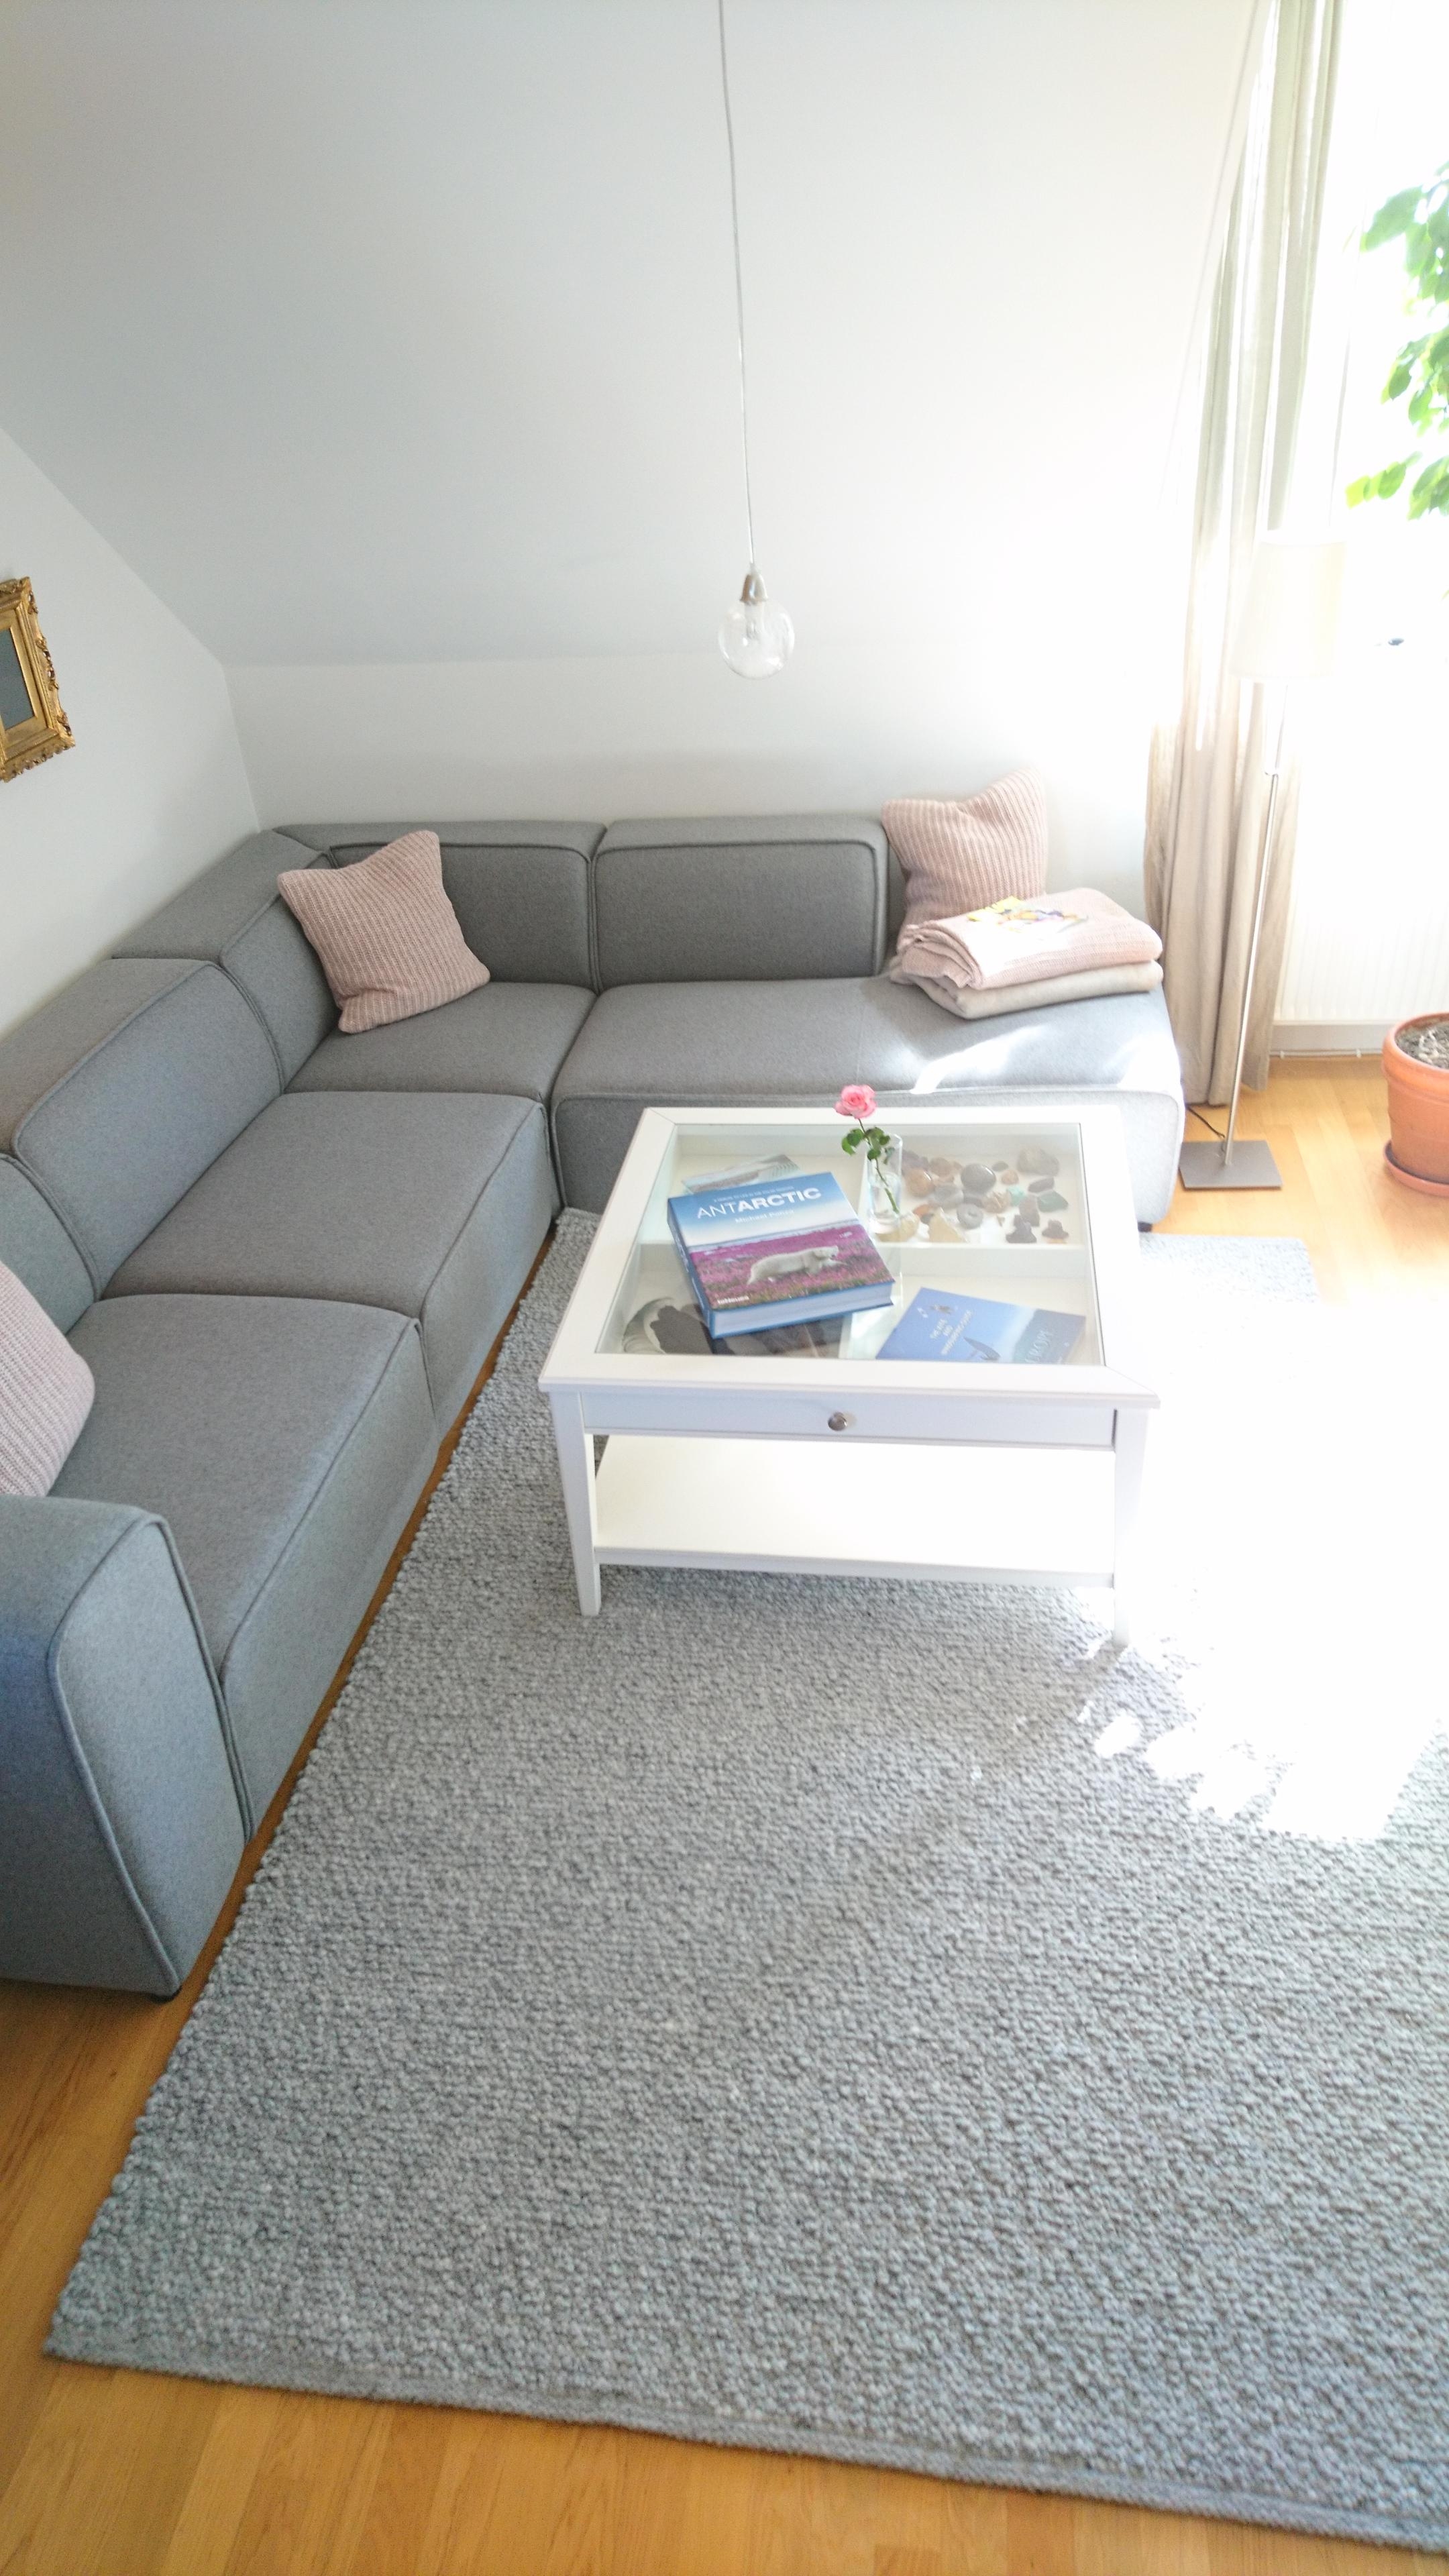 #Hygge Wohngefühl extrem.
Mit neuer #Couch in meinem "zweiten Zuhause'

